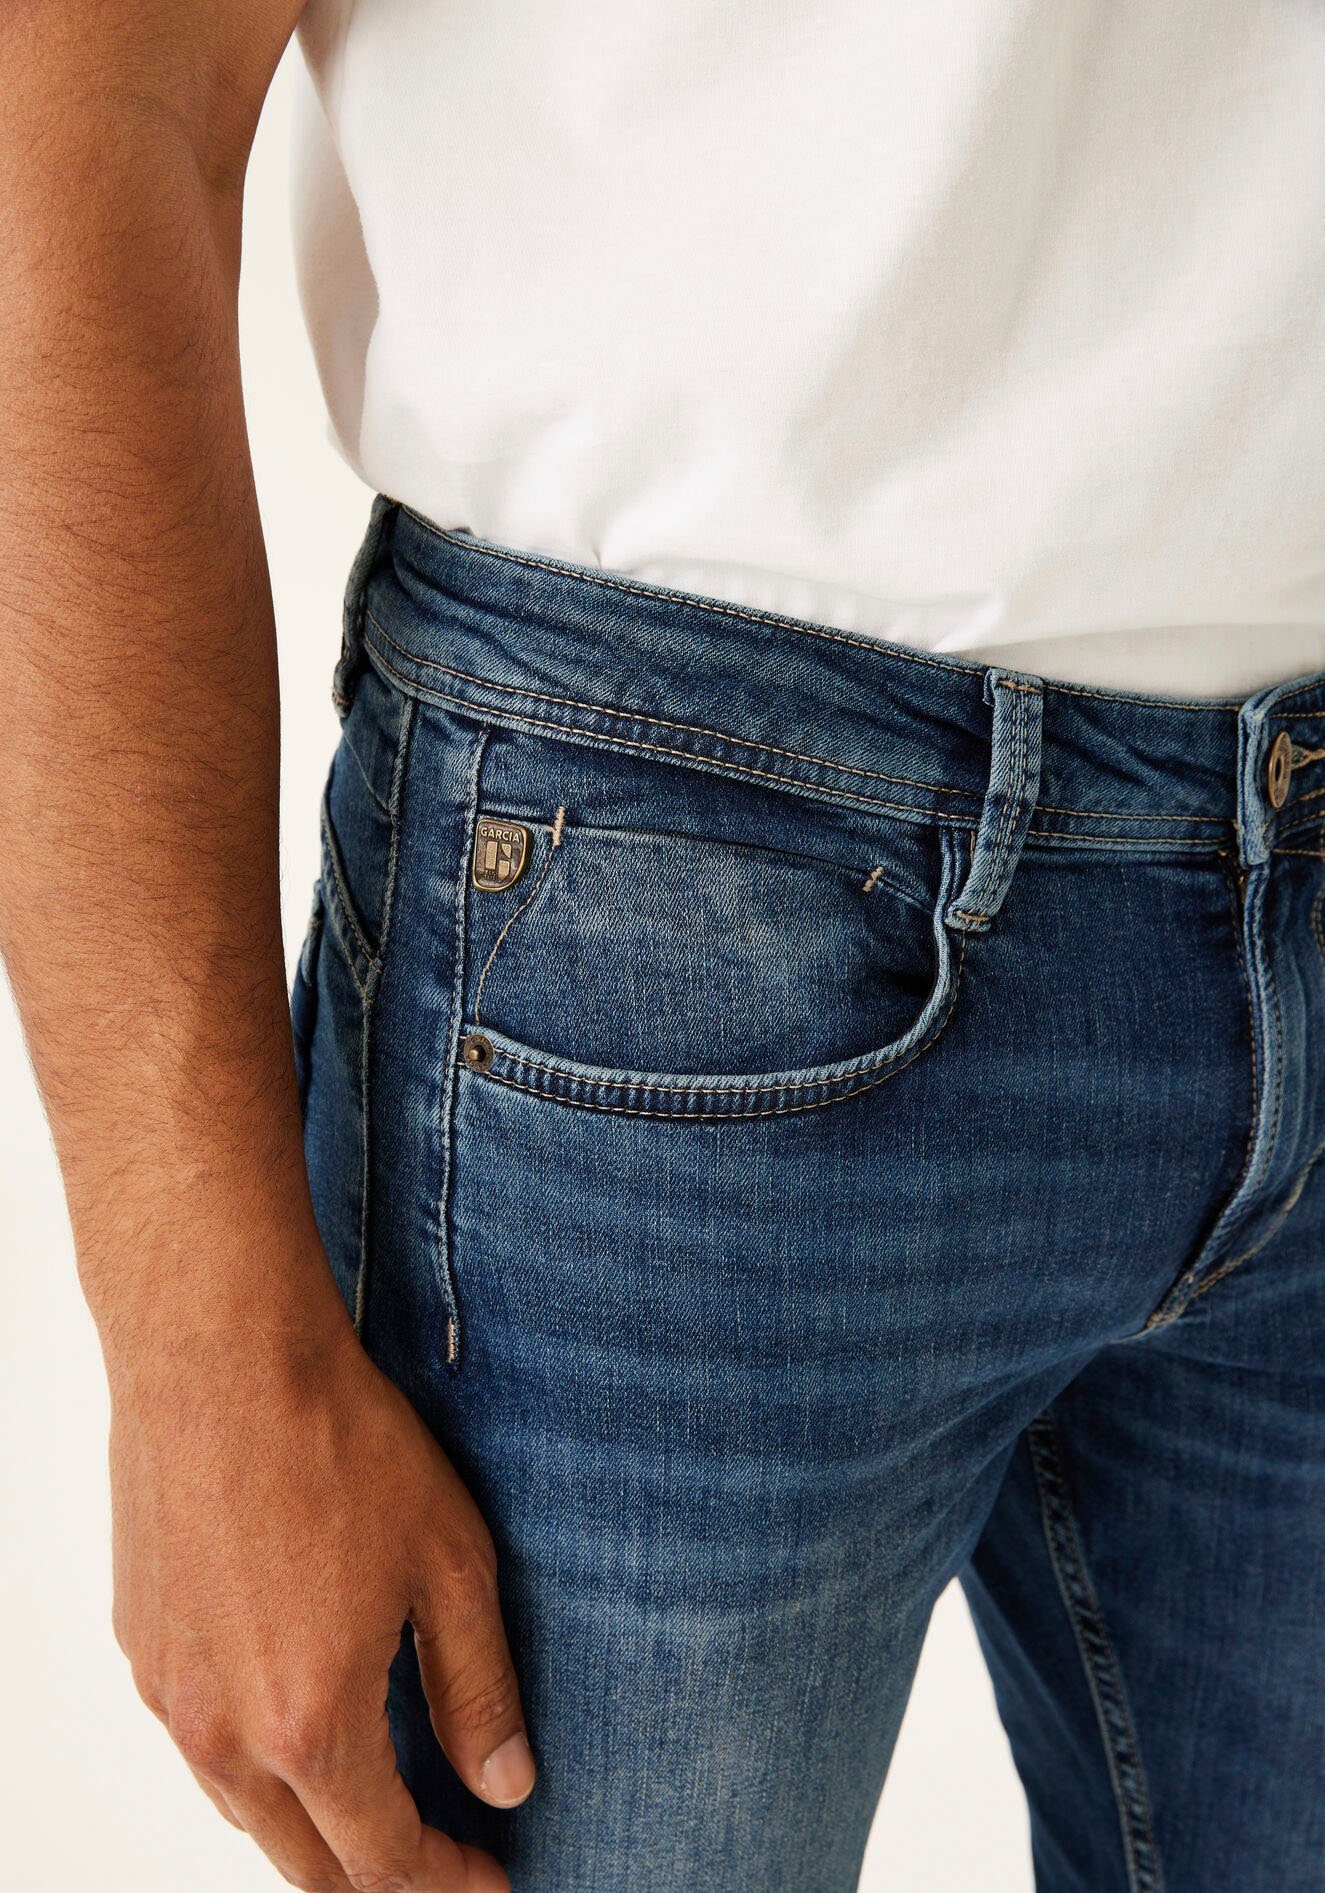 Garcia 5-Pocket-Jeans Rocko in used medium Waschungen verschiedenen